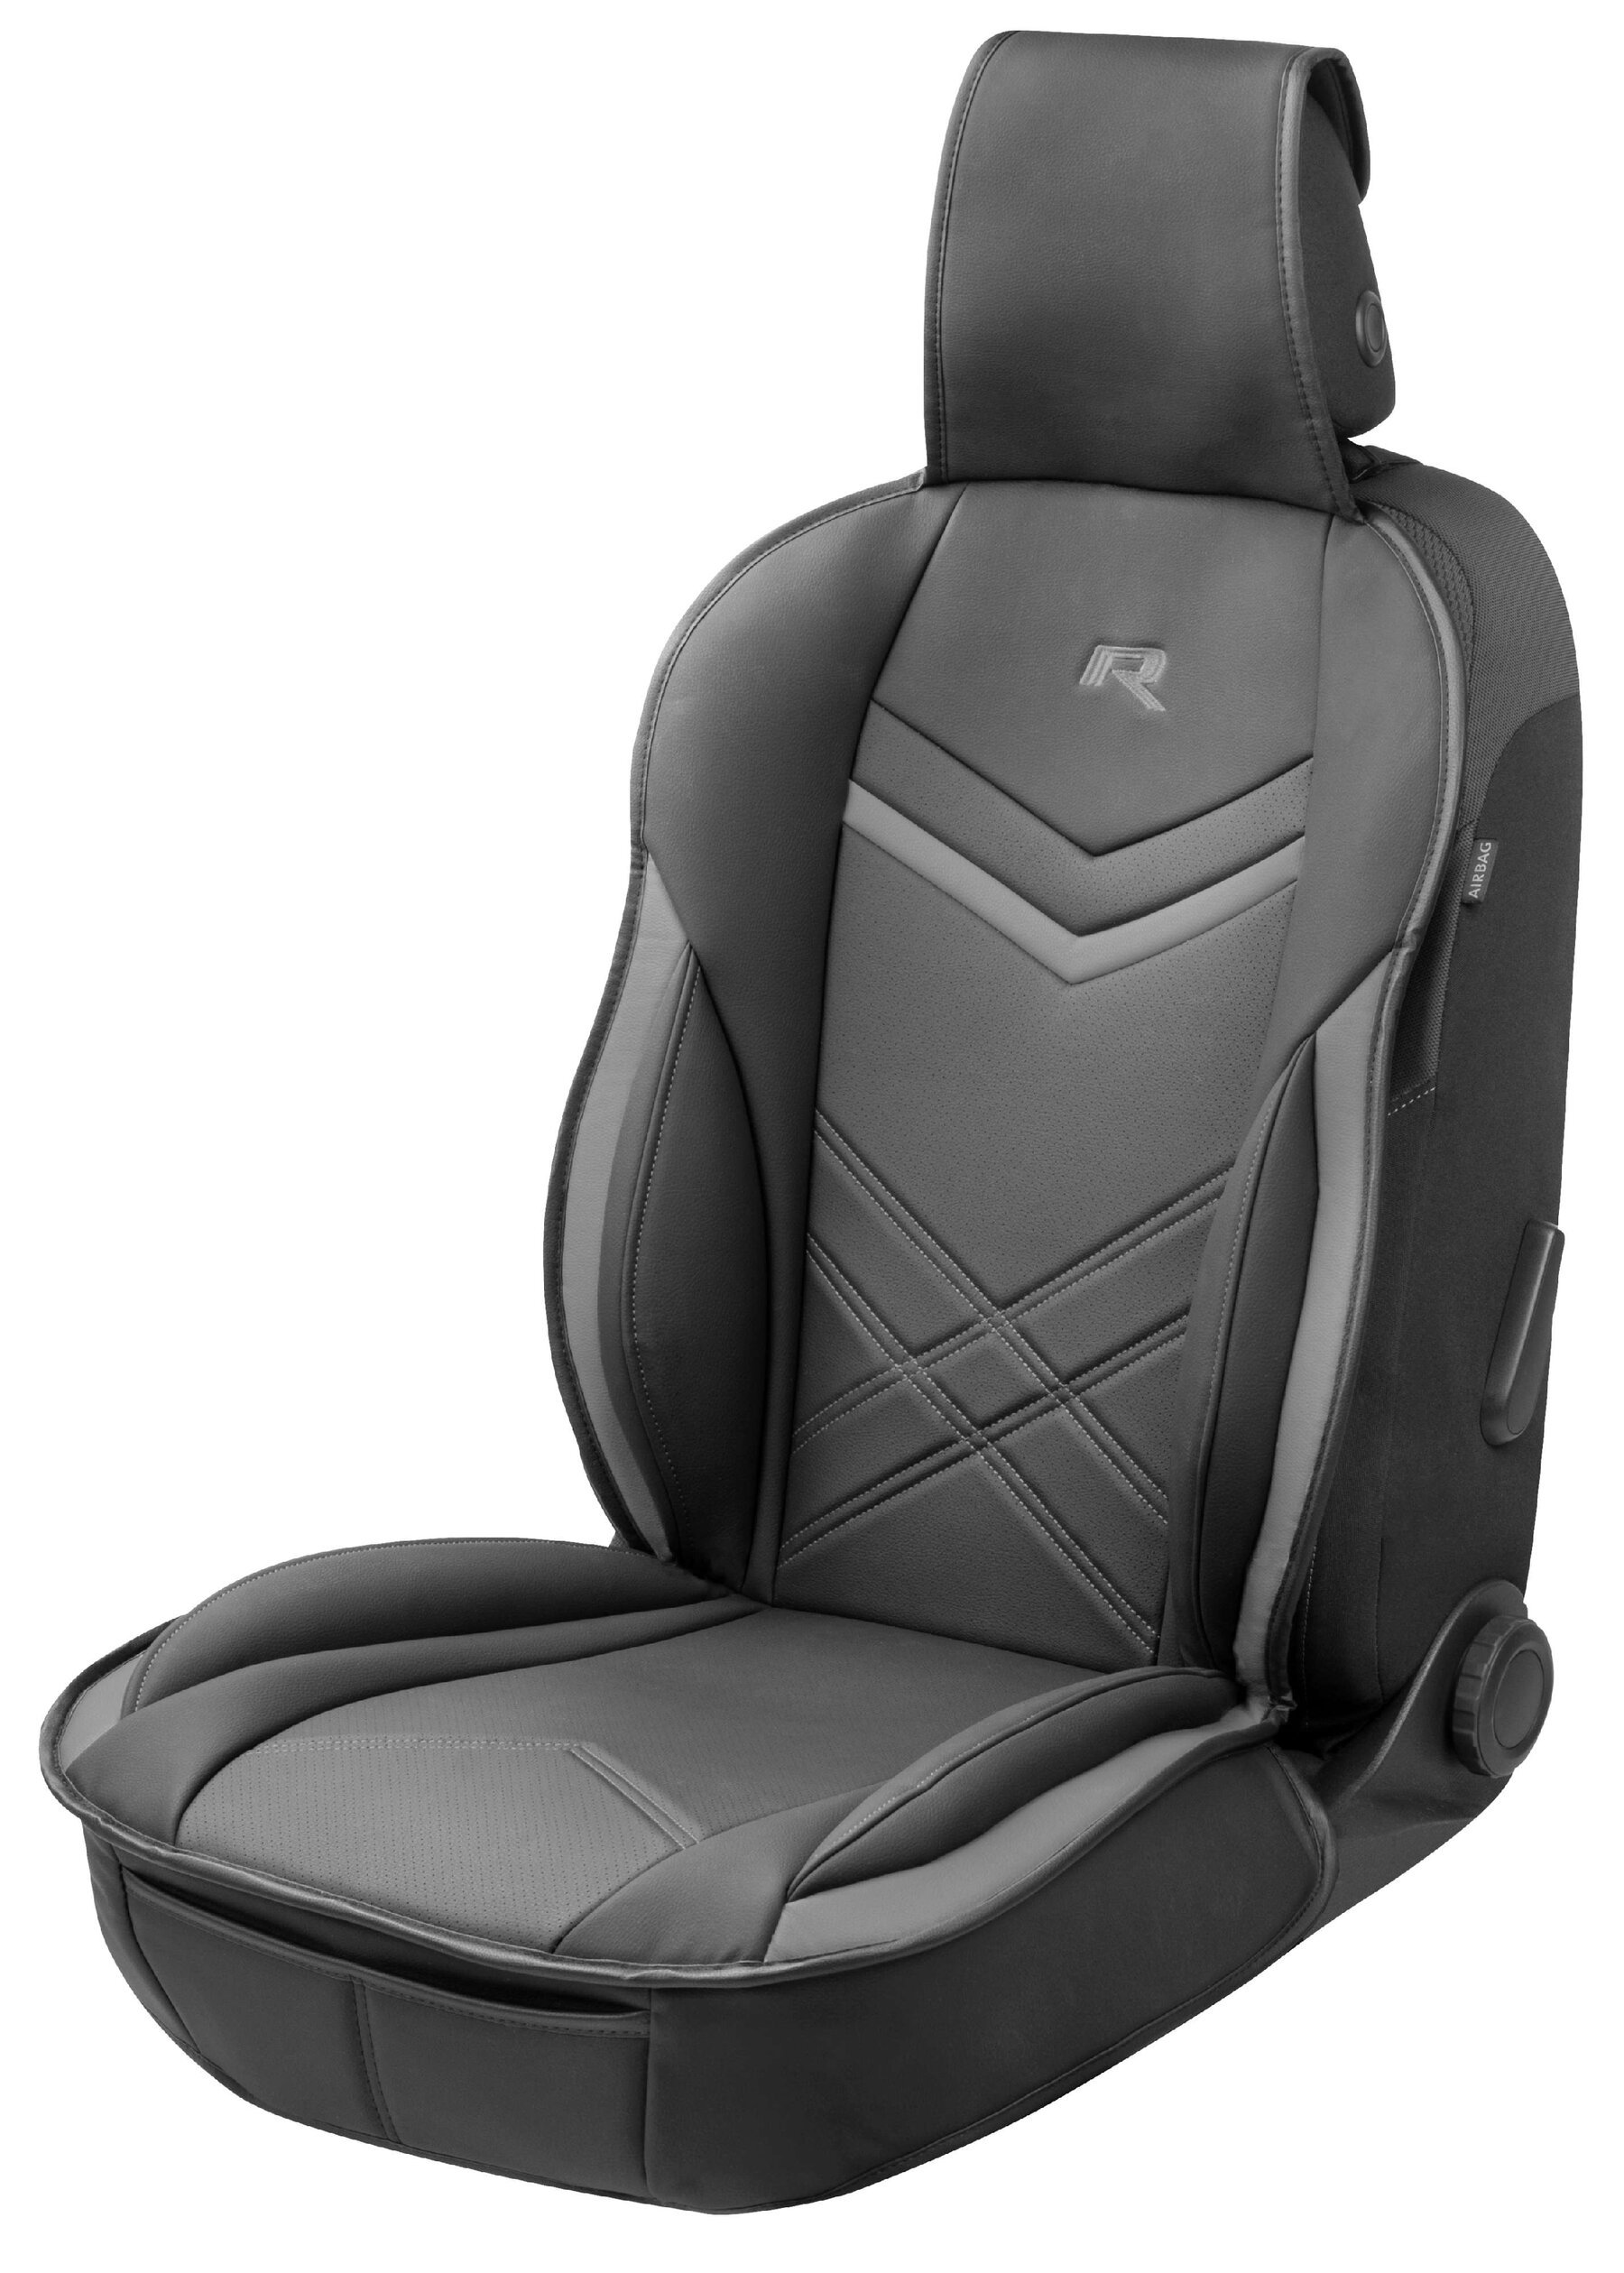 Rey car seat cushion in black-grey